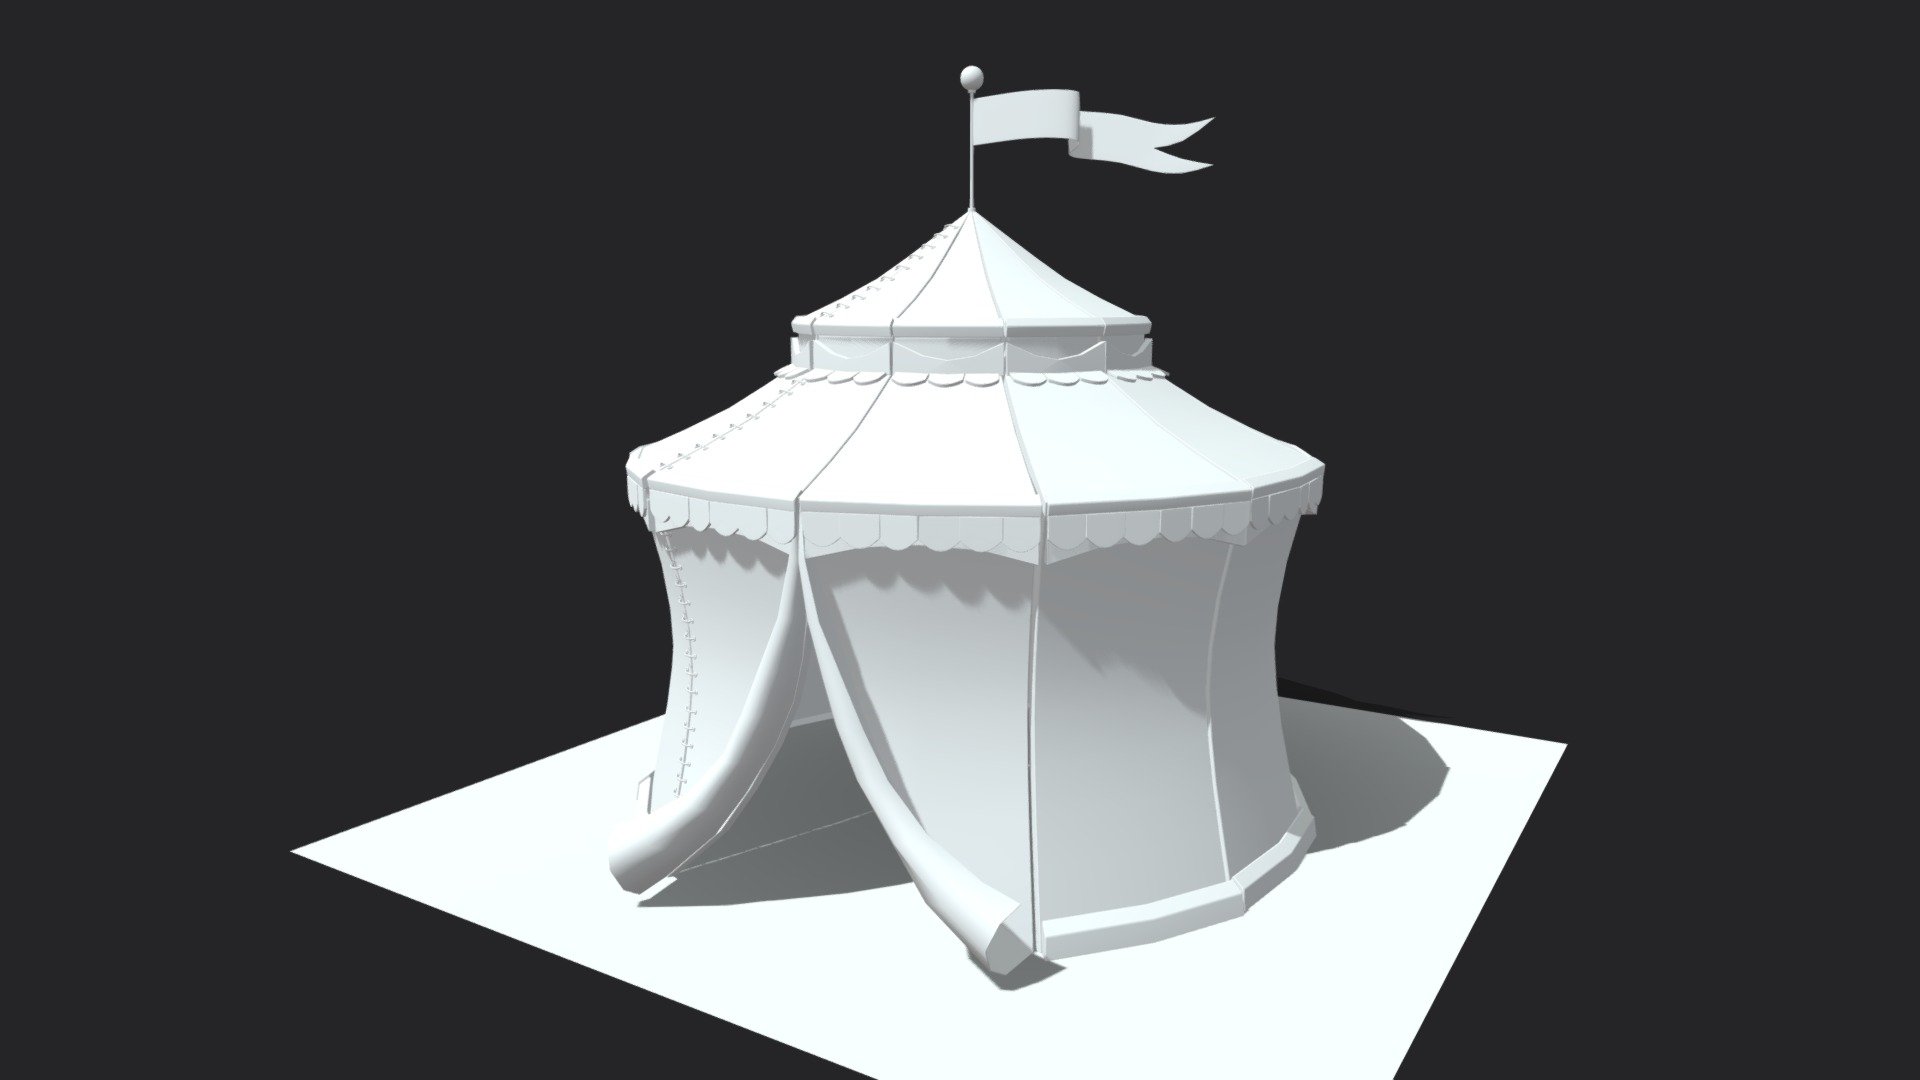 Final version of this model: https://sketchfab.com/3d-models/circus-tent-0121d11a458e43cab0412dc88d0ccc87 - Circus Tent - 3D model by Enkarra 3d model